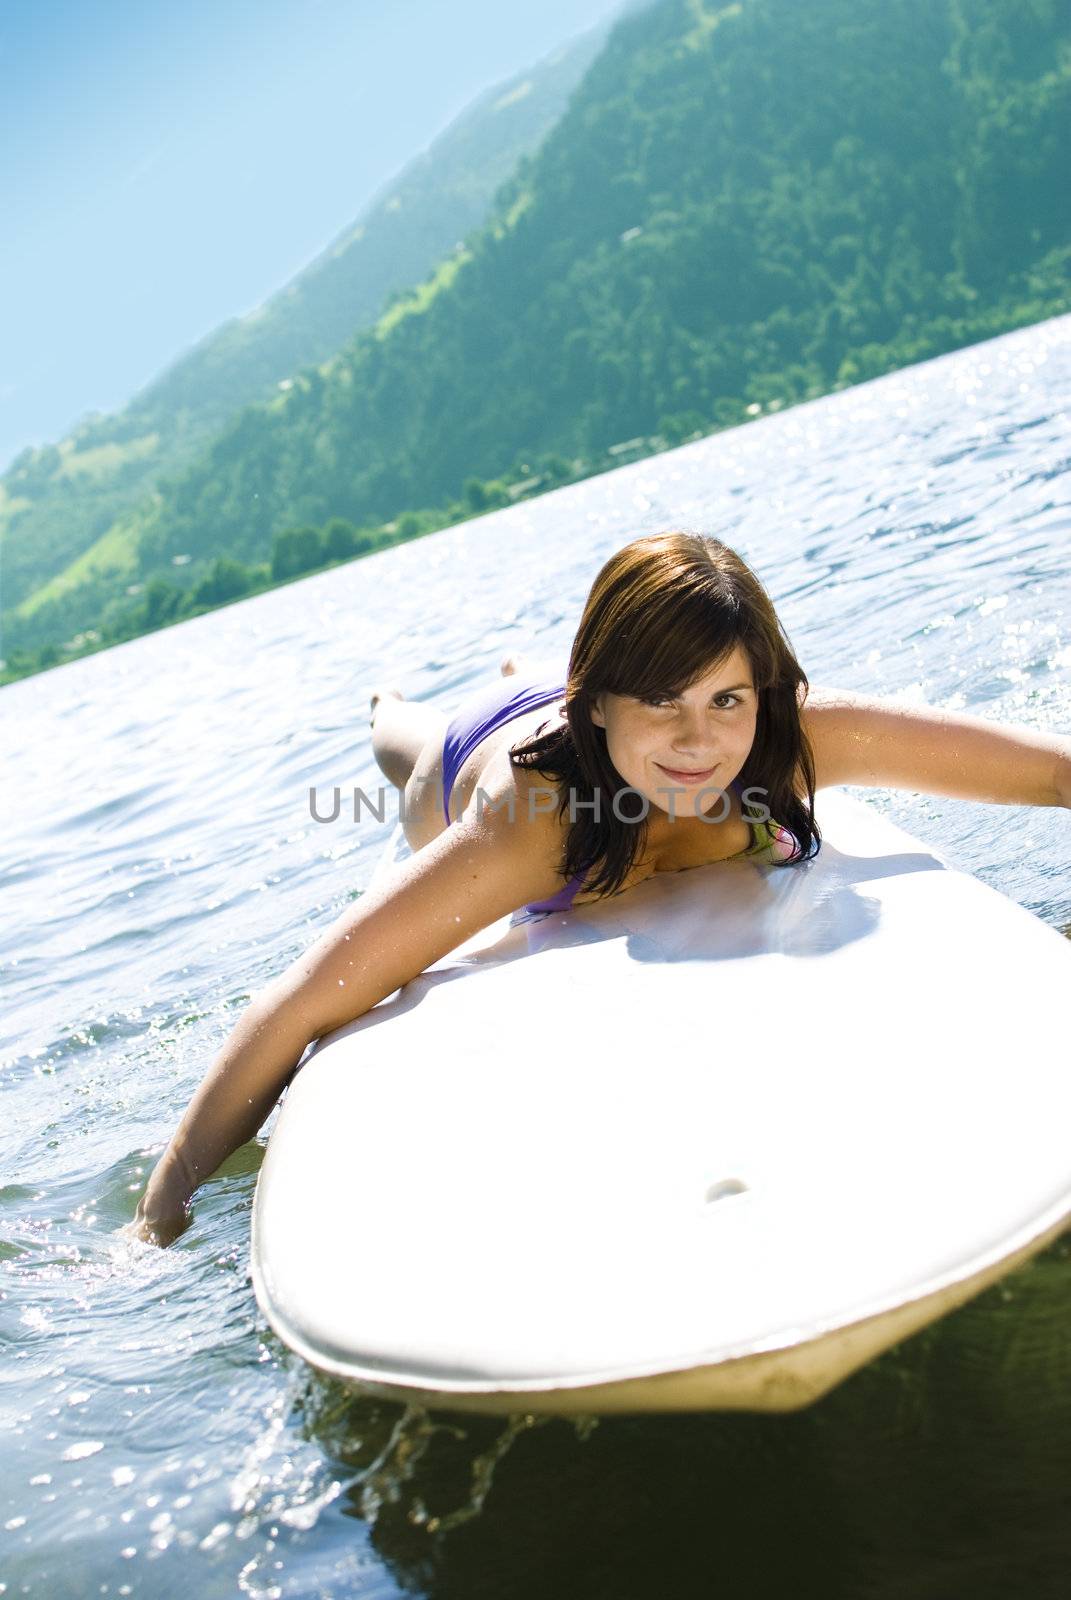 Cute girl relaxing on a surfboard in austrian lake.